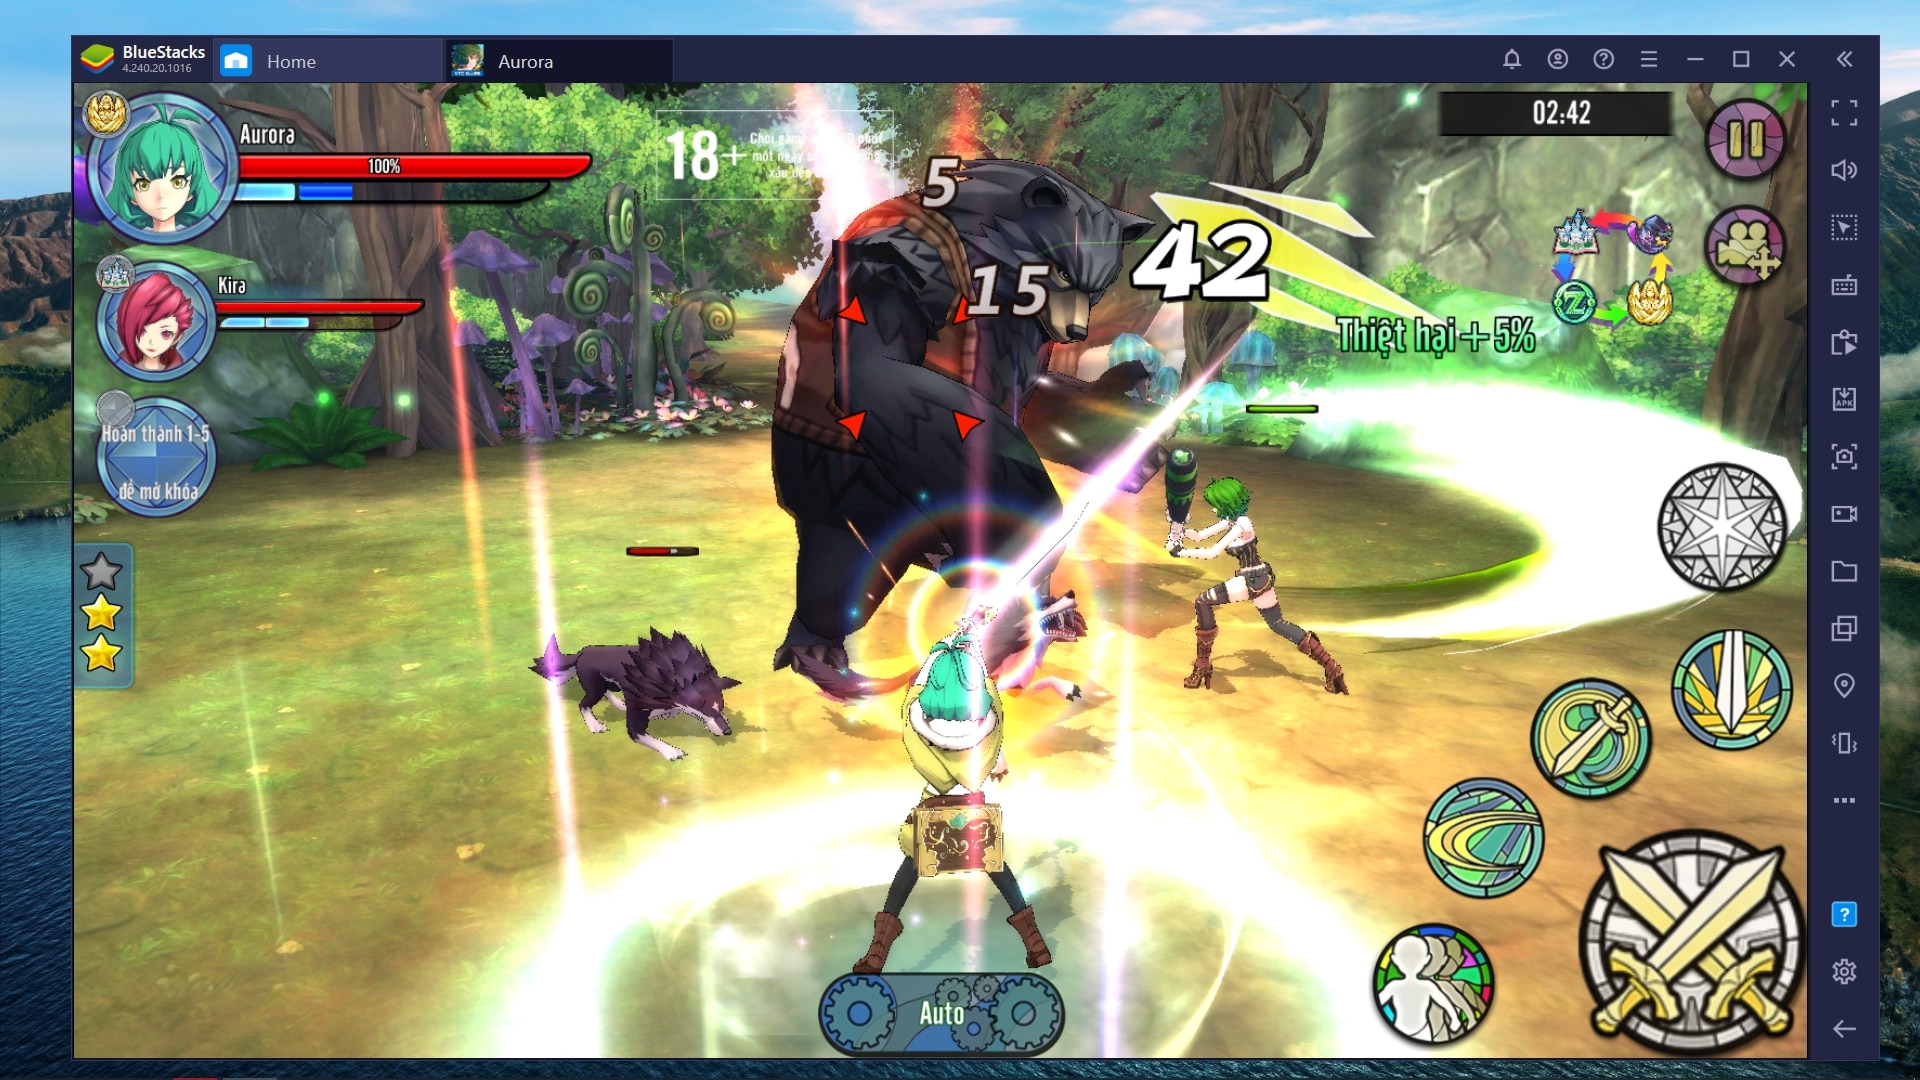 Aurora - Vùng Đất Huyền Thoại, tựa game mobile RPG chặt chém cực đã khi chơi trên phần mềm BlueStacks